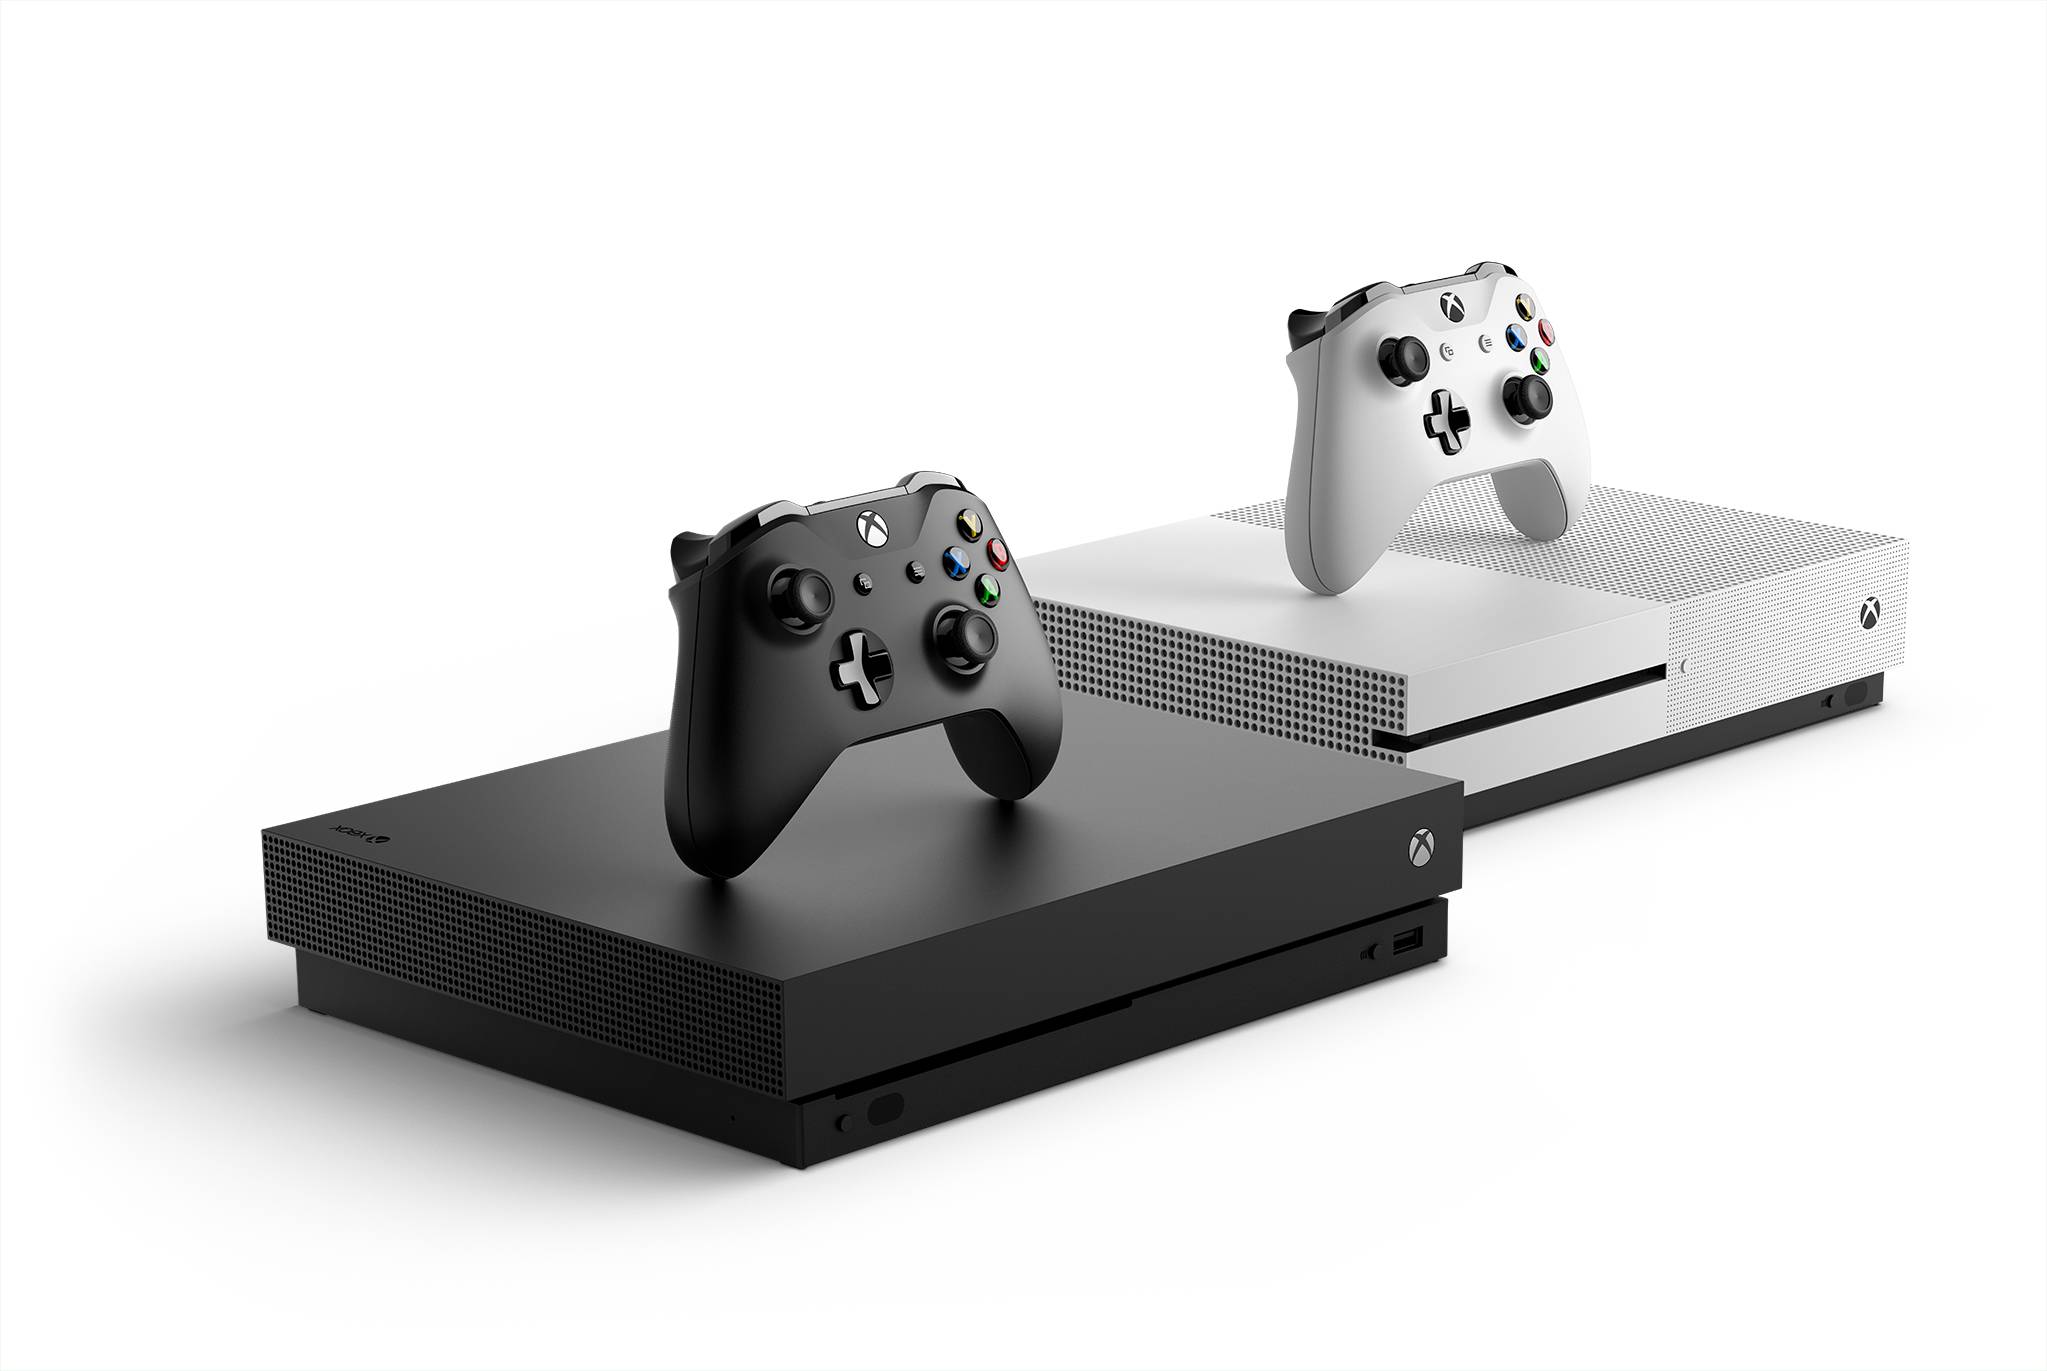 Xbox One X guida la famiglia delle console Microsoft di ultima generazione 